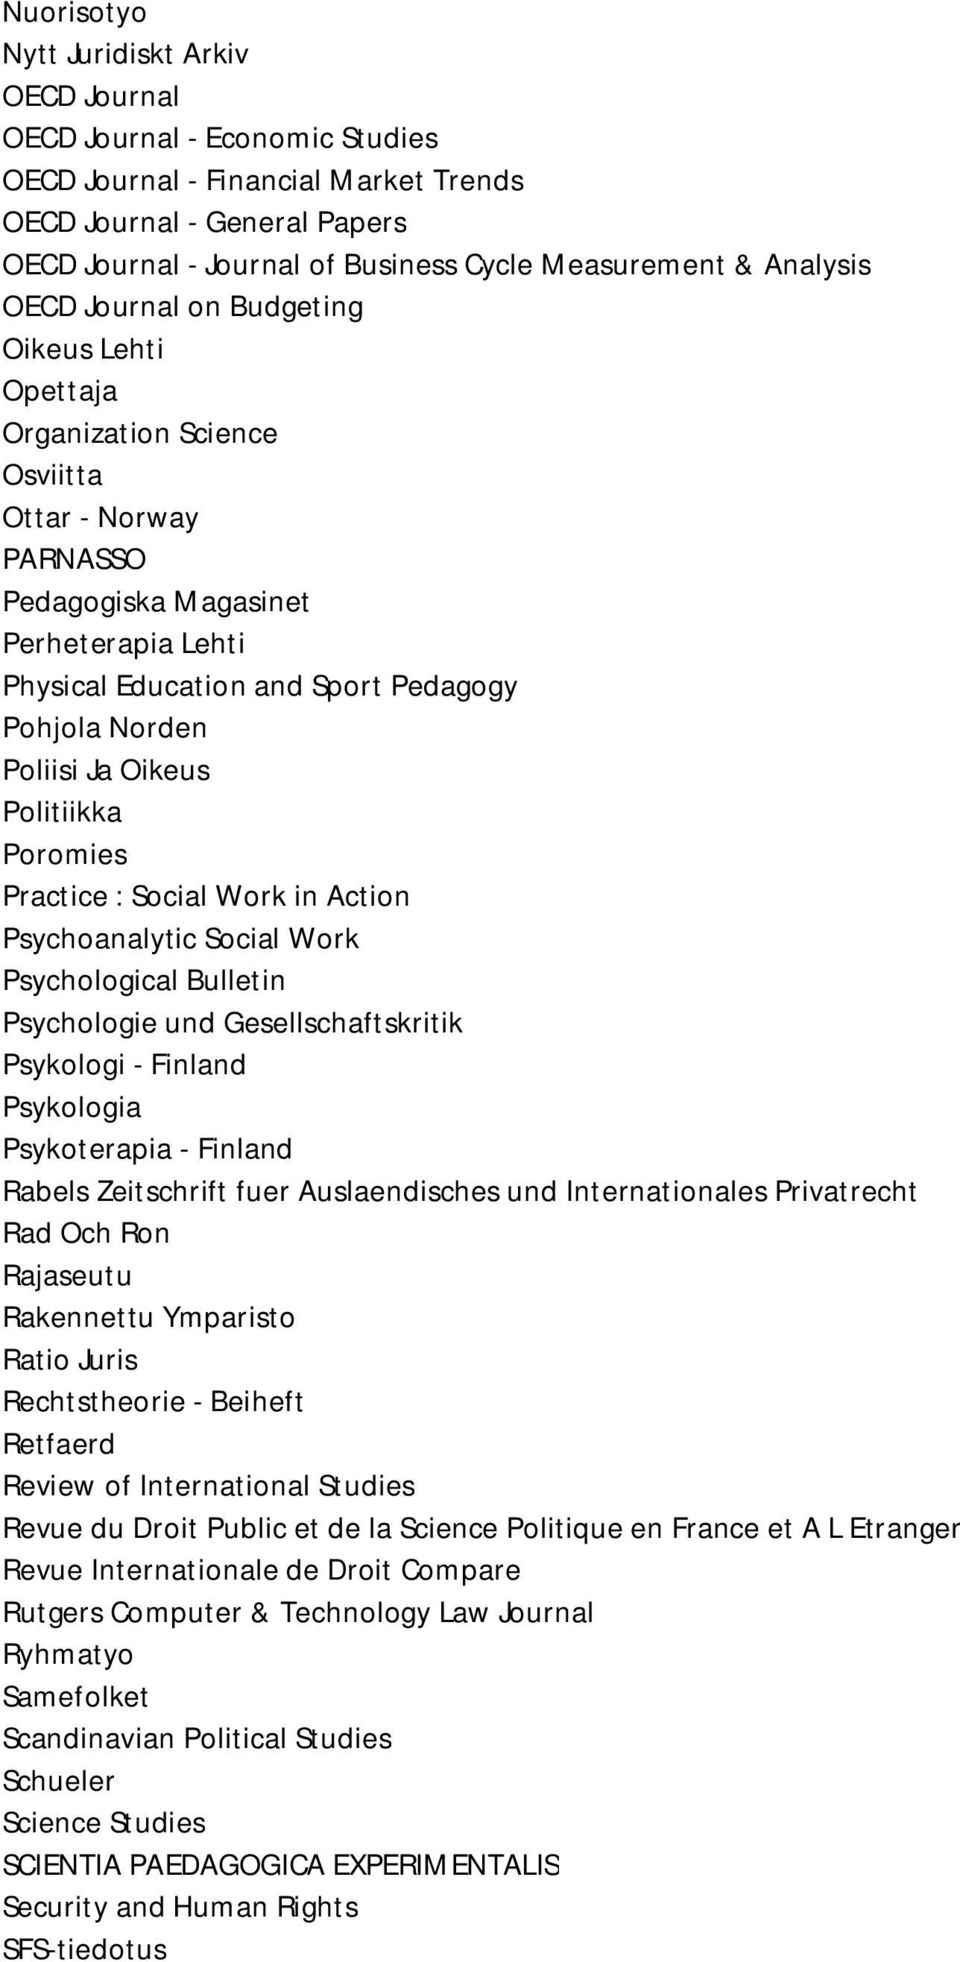 Norden Poliisi Ja Oikeus Politiikka Poromies Practice : Social Work in Action Psychoanalytic Social Work Psychological Bulletin Psychologie und Gesellschaftskritik Psykologi - Finland Psykologia